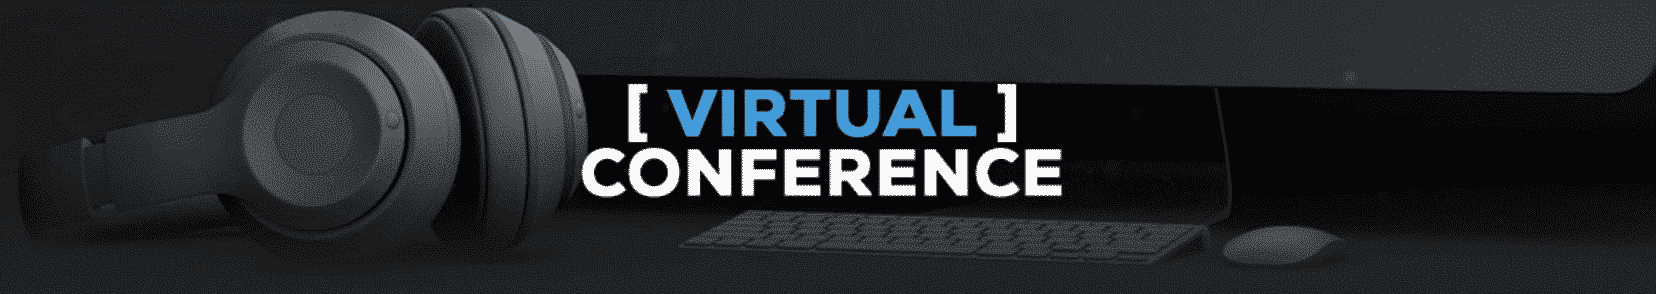 Virtual Conference Digicom